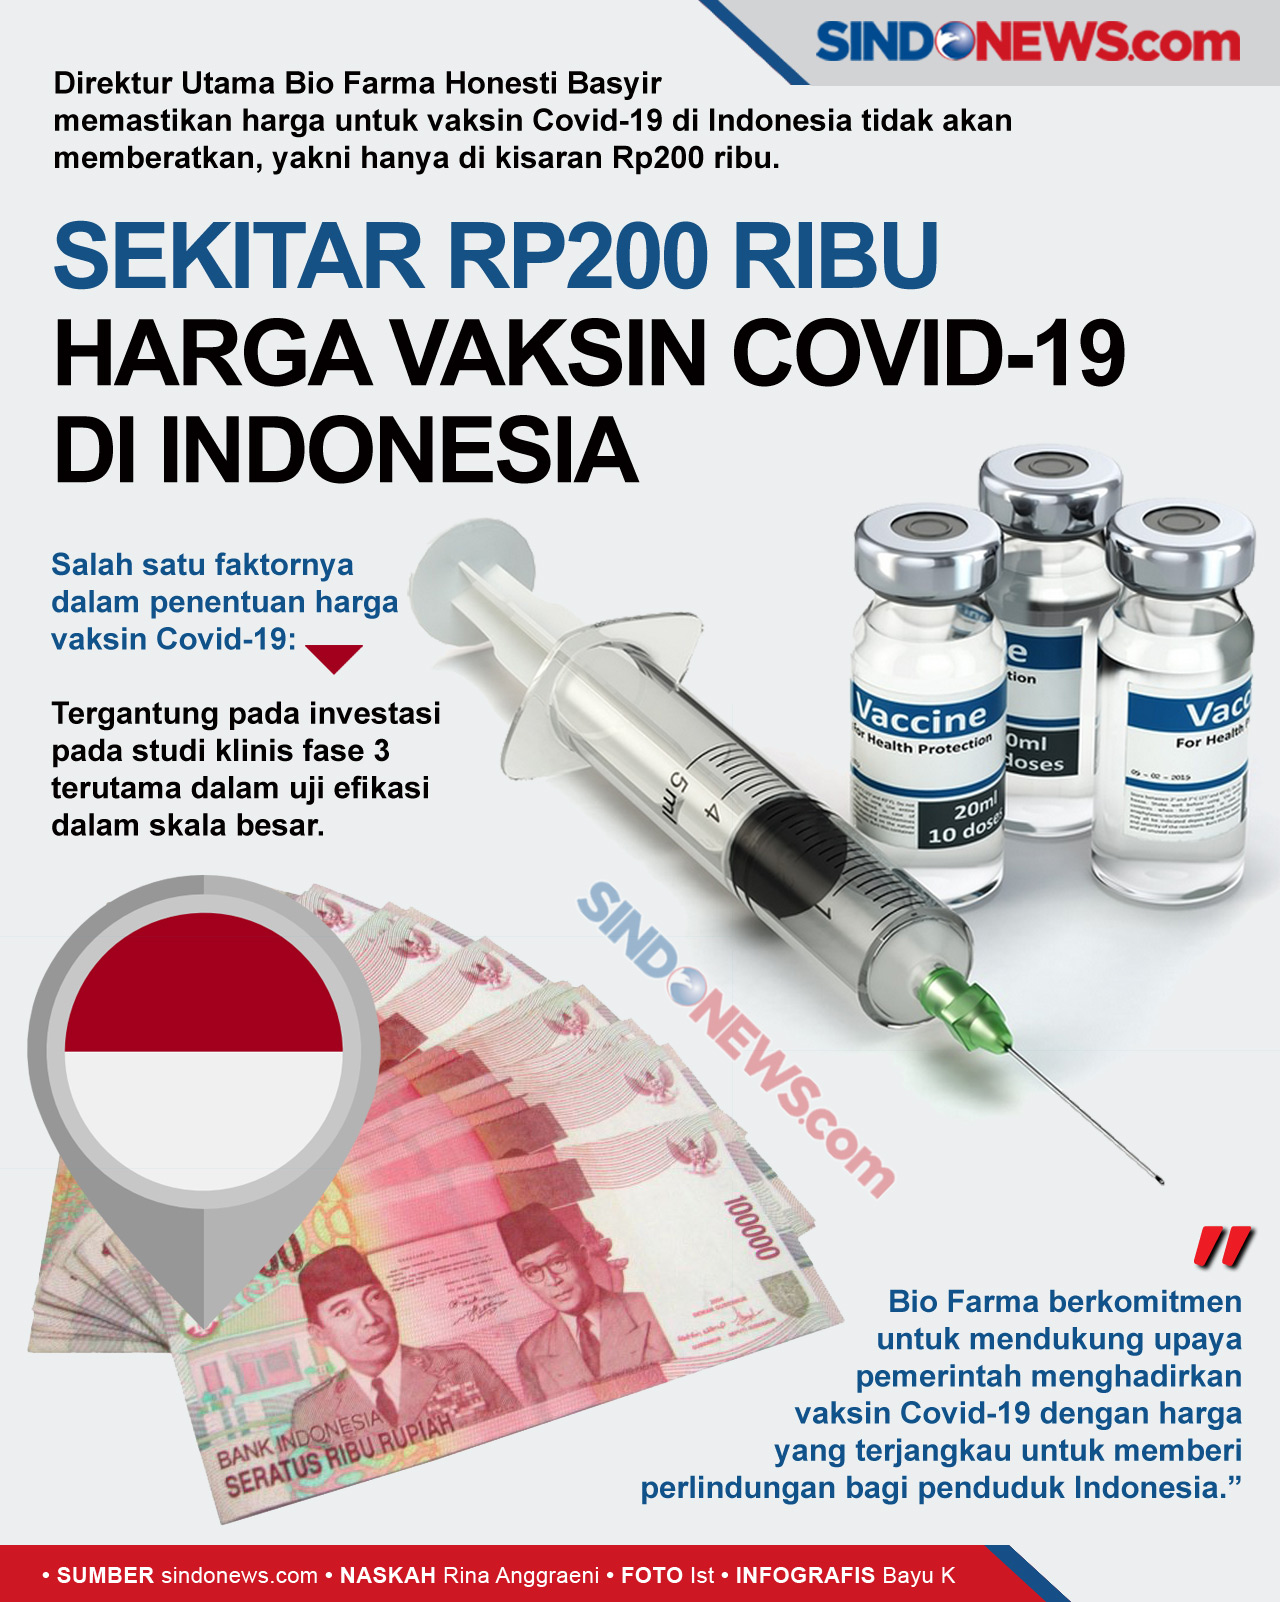 Di Indonesia Harga Vaksin Covid-19 Sekitar Rp200 Ribu